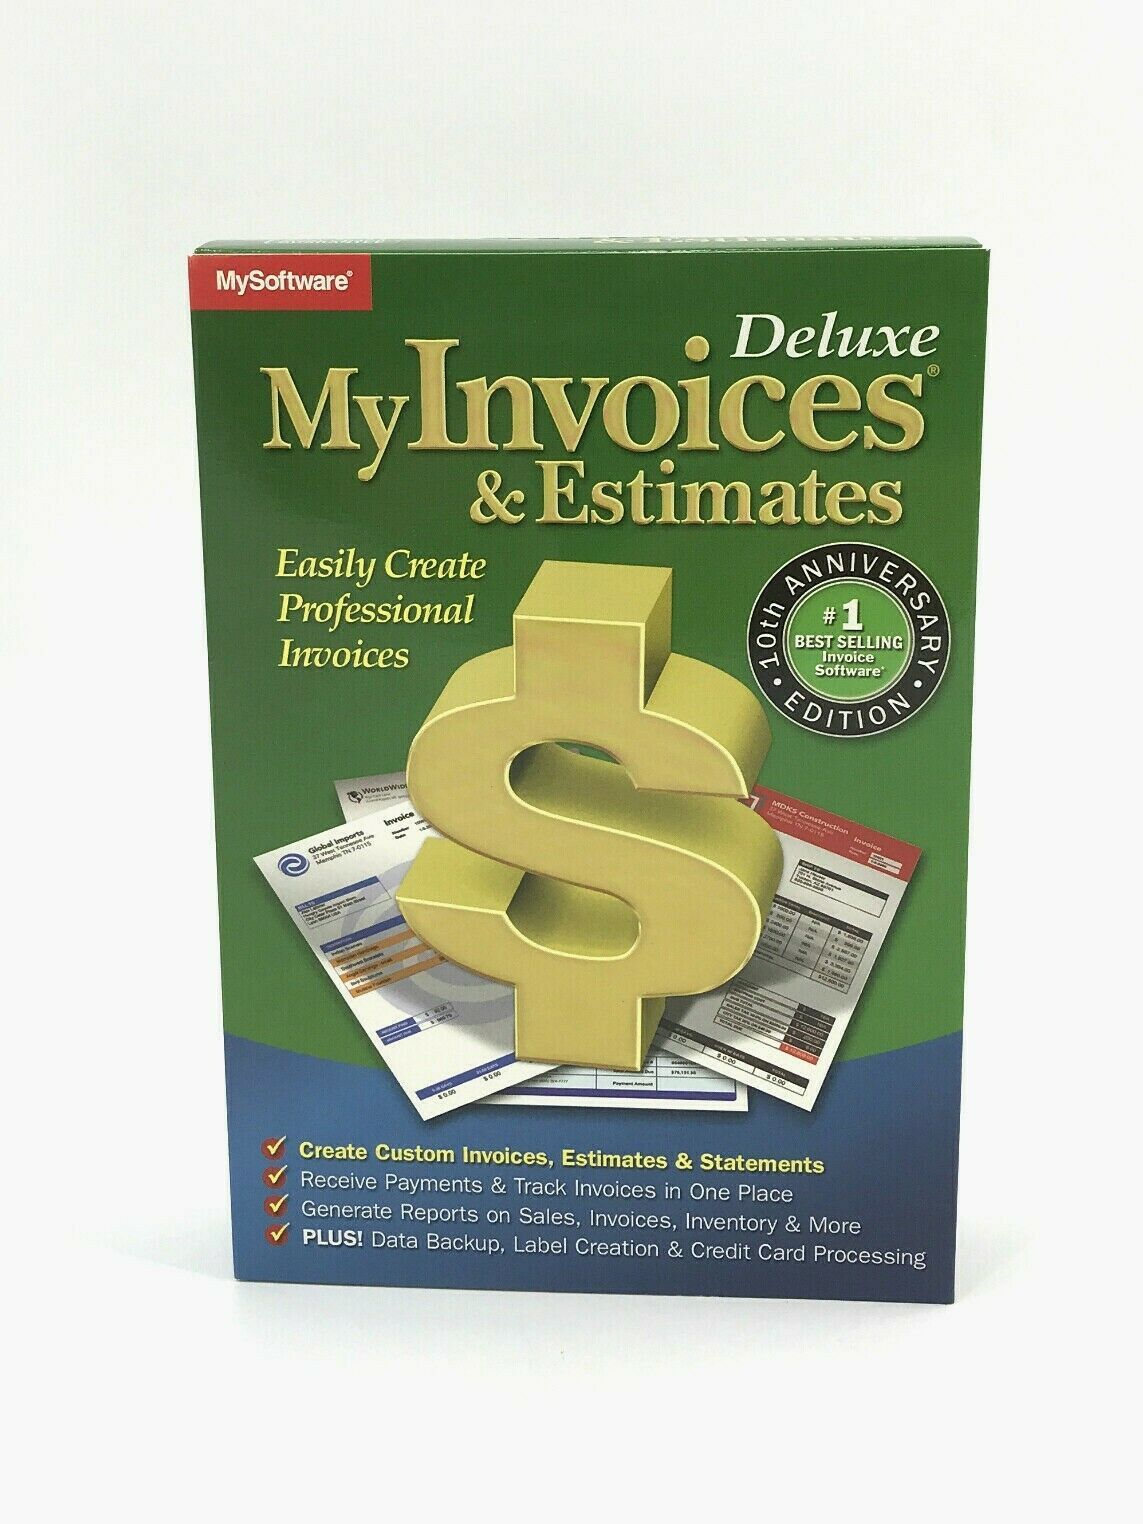 myinvoices estimates deluxe